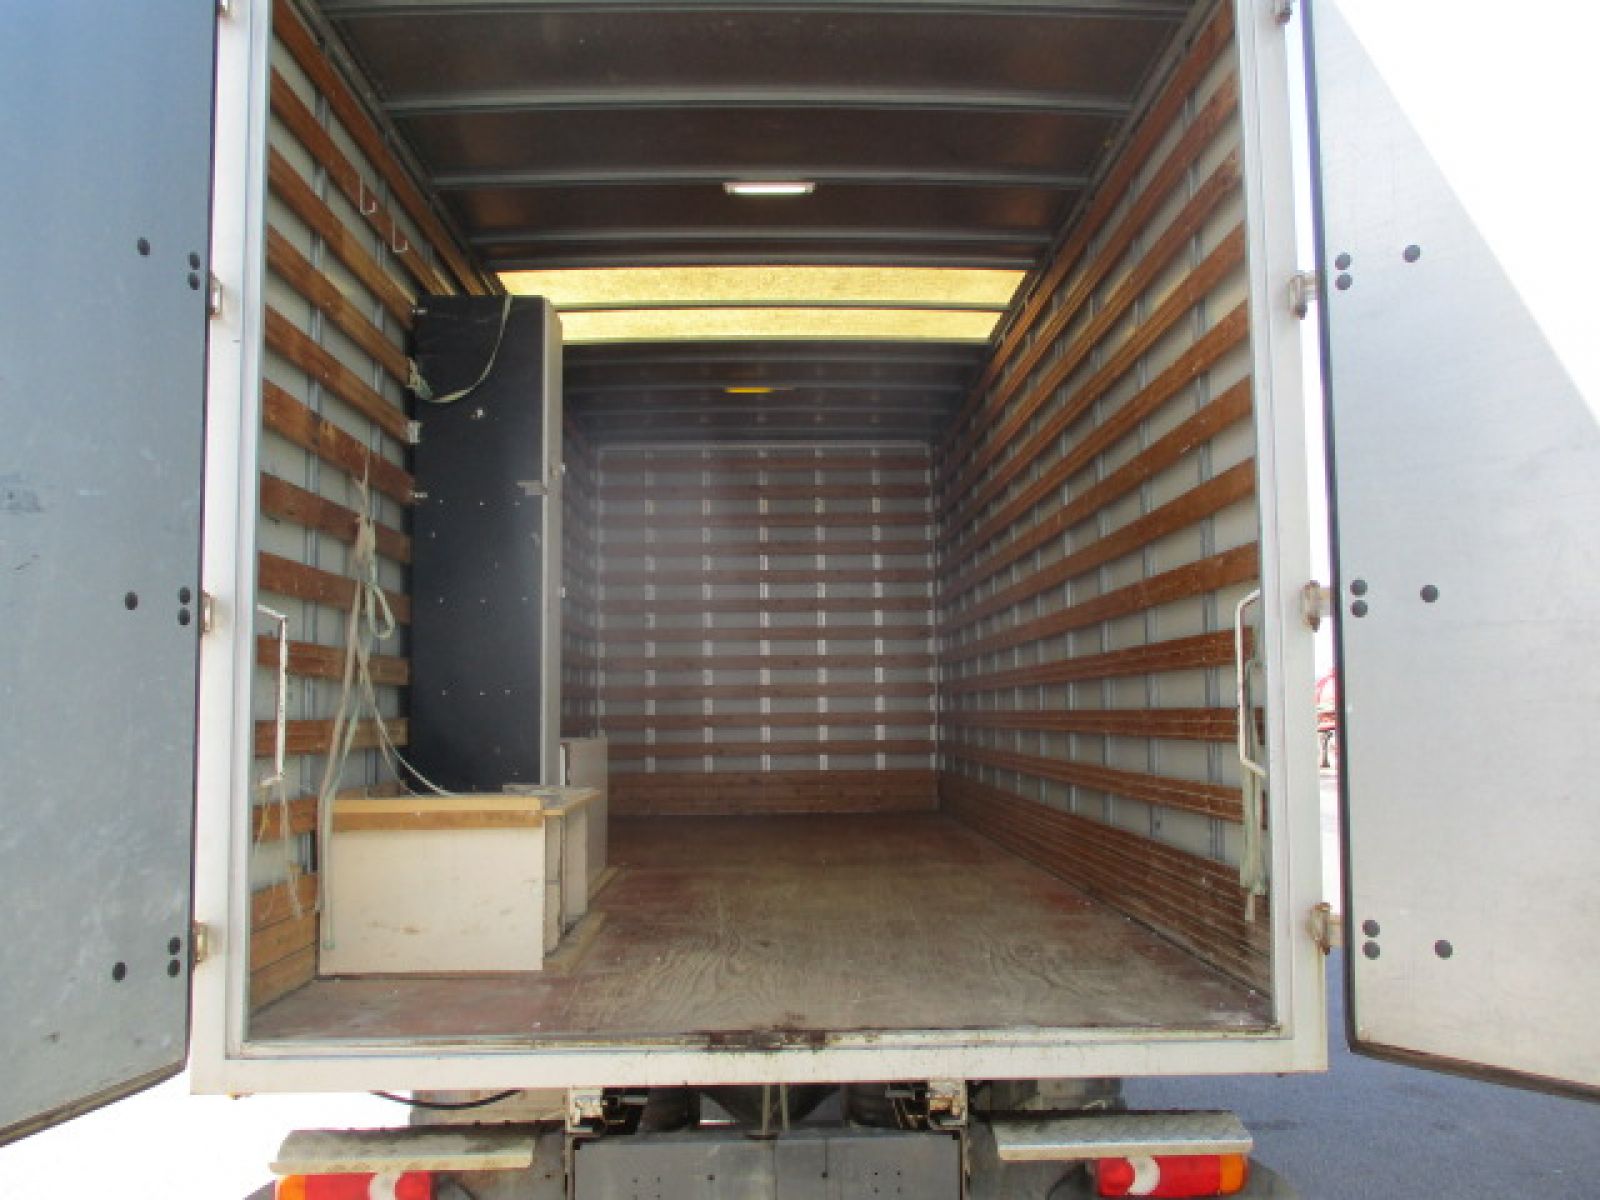  Unidades de camiones - VOLVO FL 240  FOURGON (Belgique - Europe) - Houffalize Trading s.a.